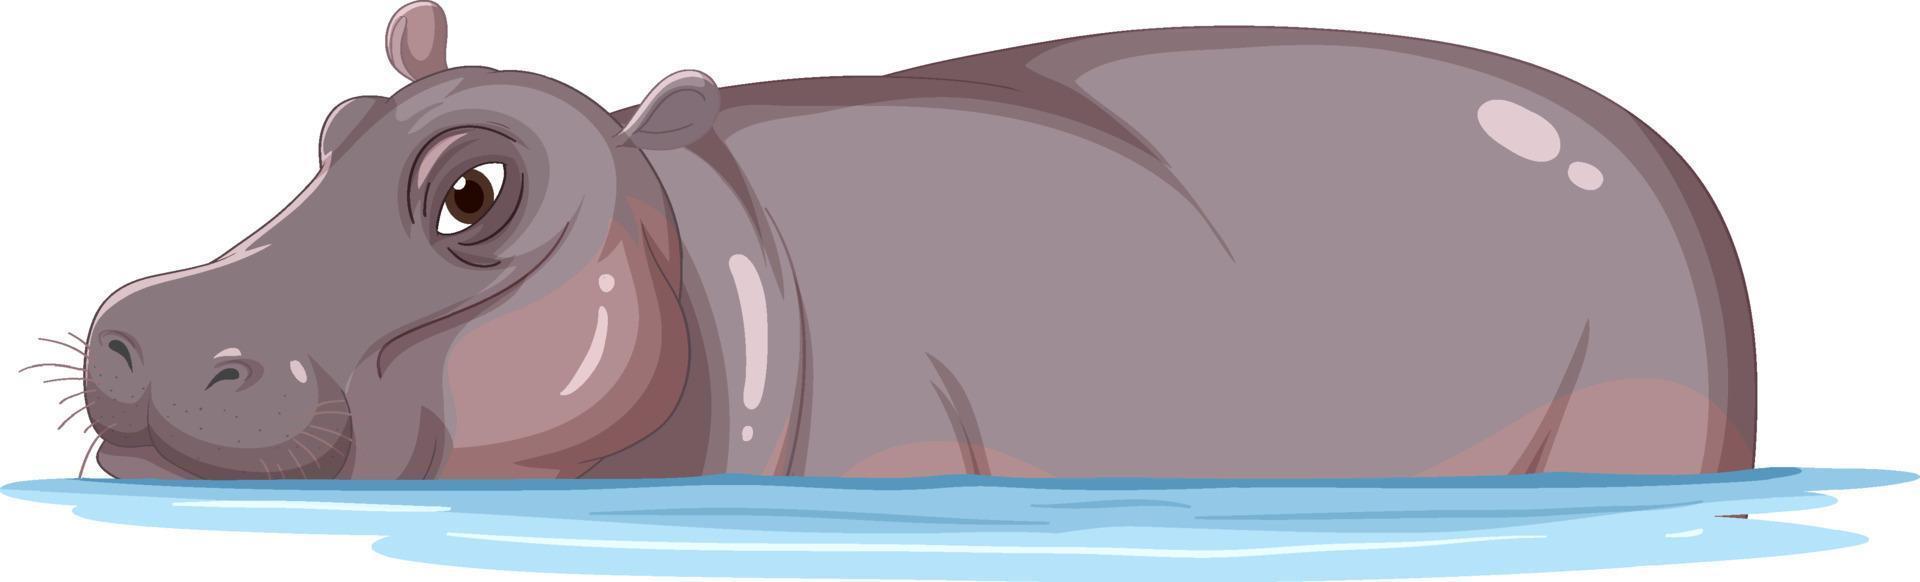 Hippopotamus in the water vector